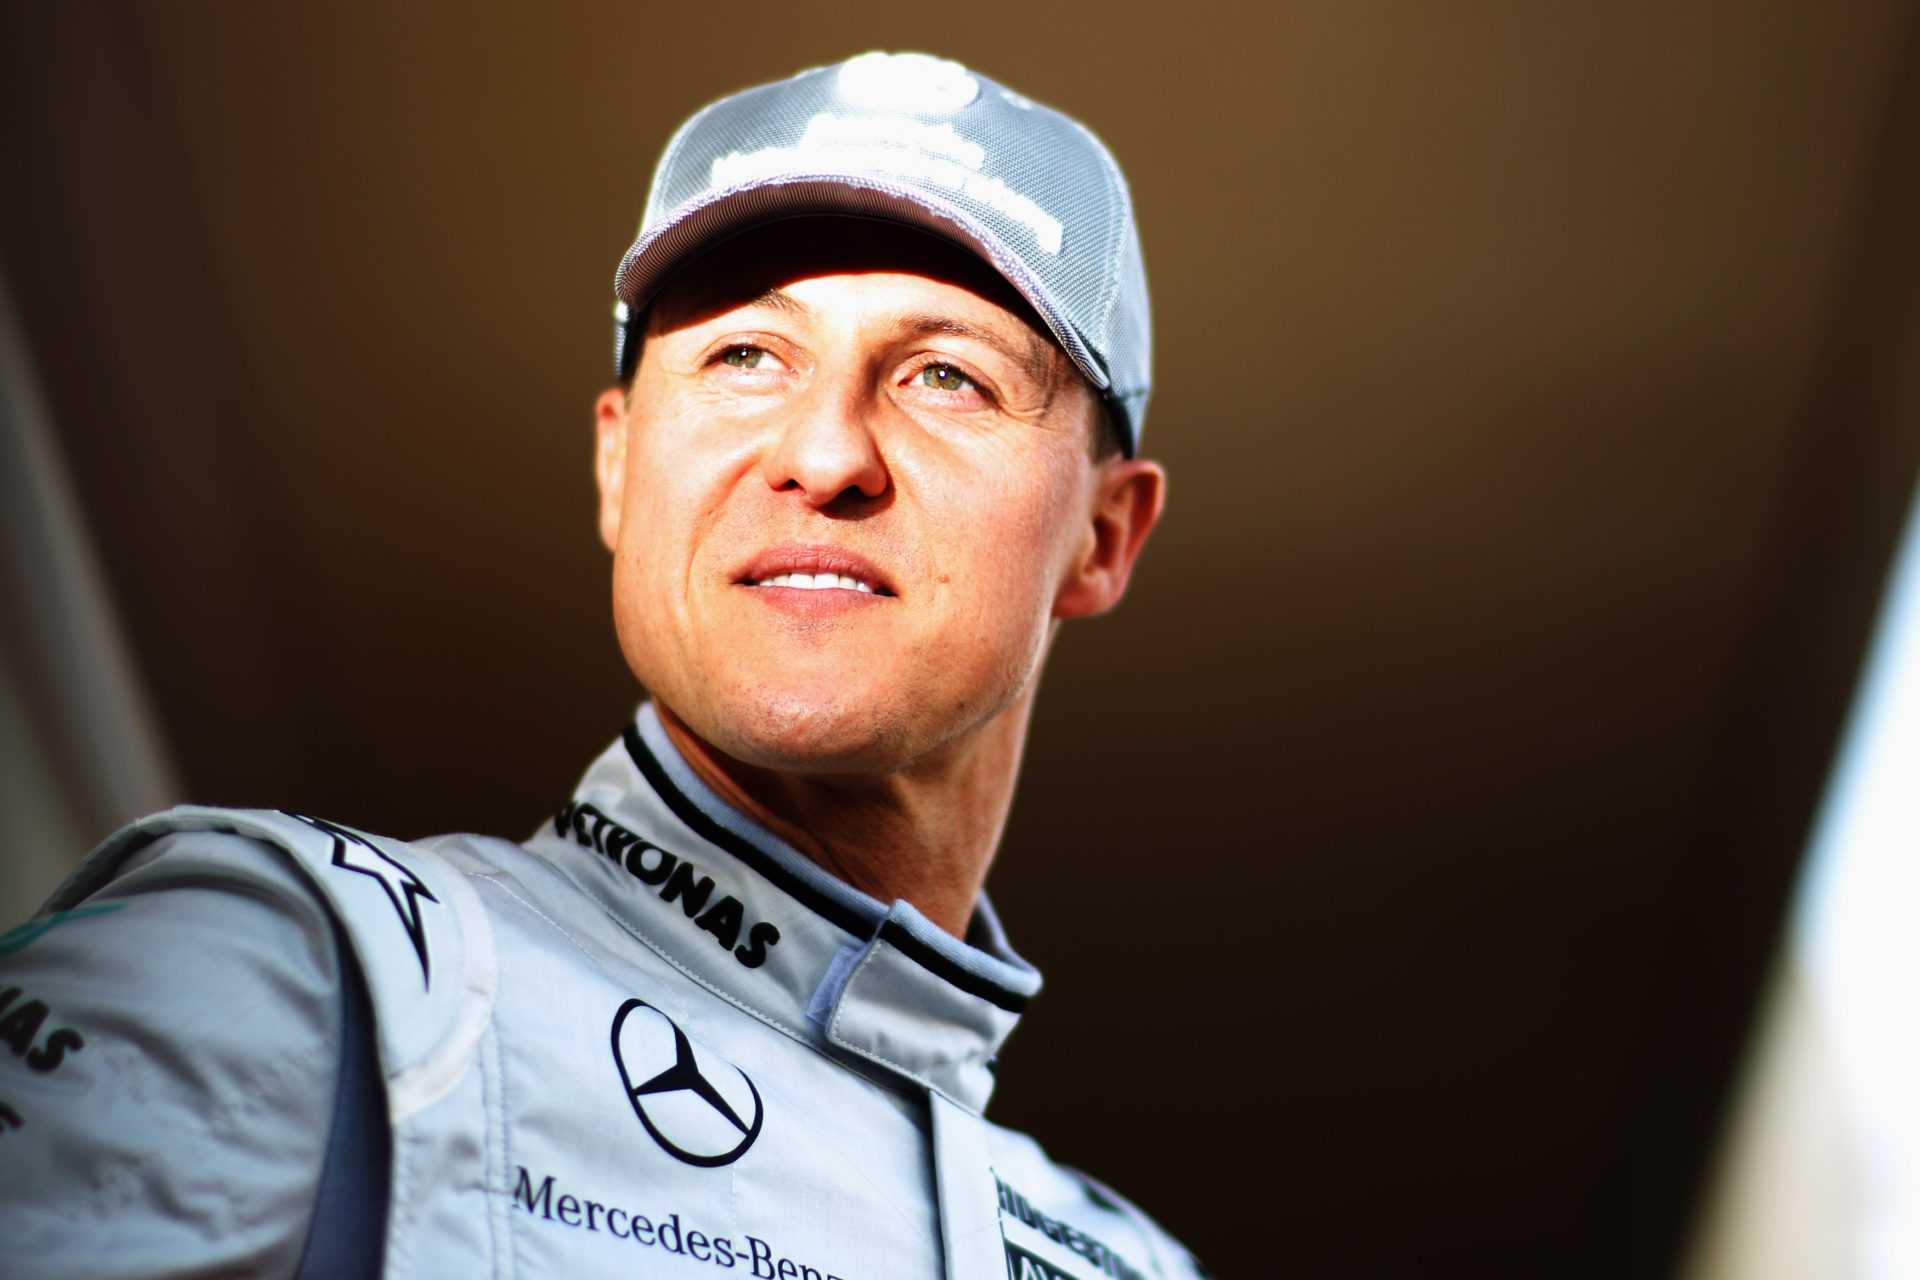 Michael Schumacher dans un costume Mercedes avant la course à Bahreïn